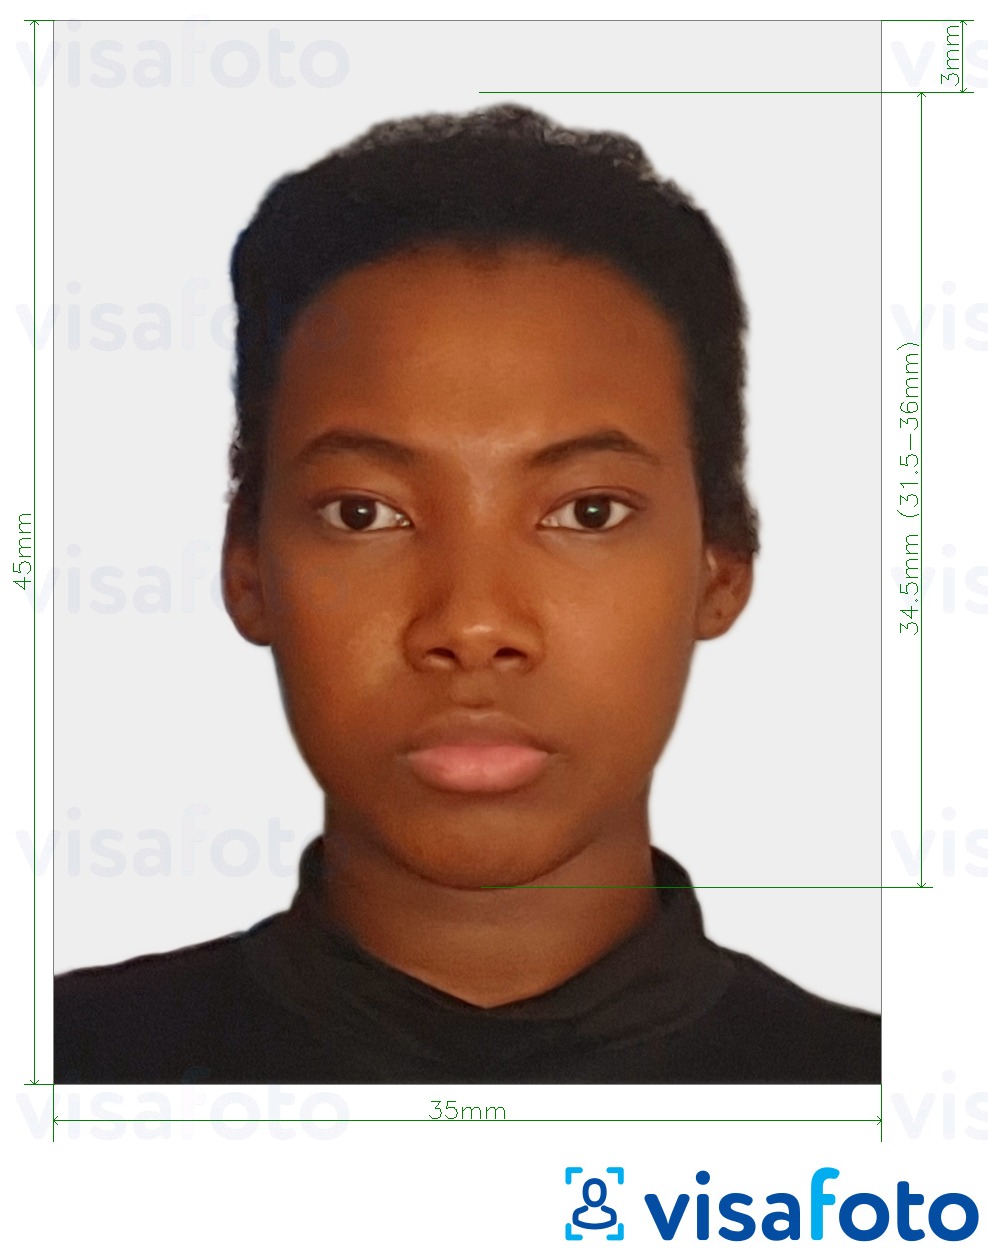 Exemplu de fotografie pentru Surinam visa 45x35 mm (1.77x1.37 inch) cu aceeași dimensiune indicată